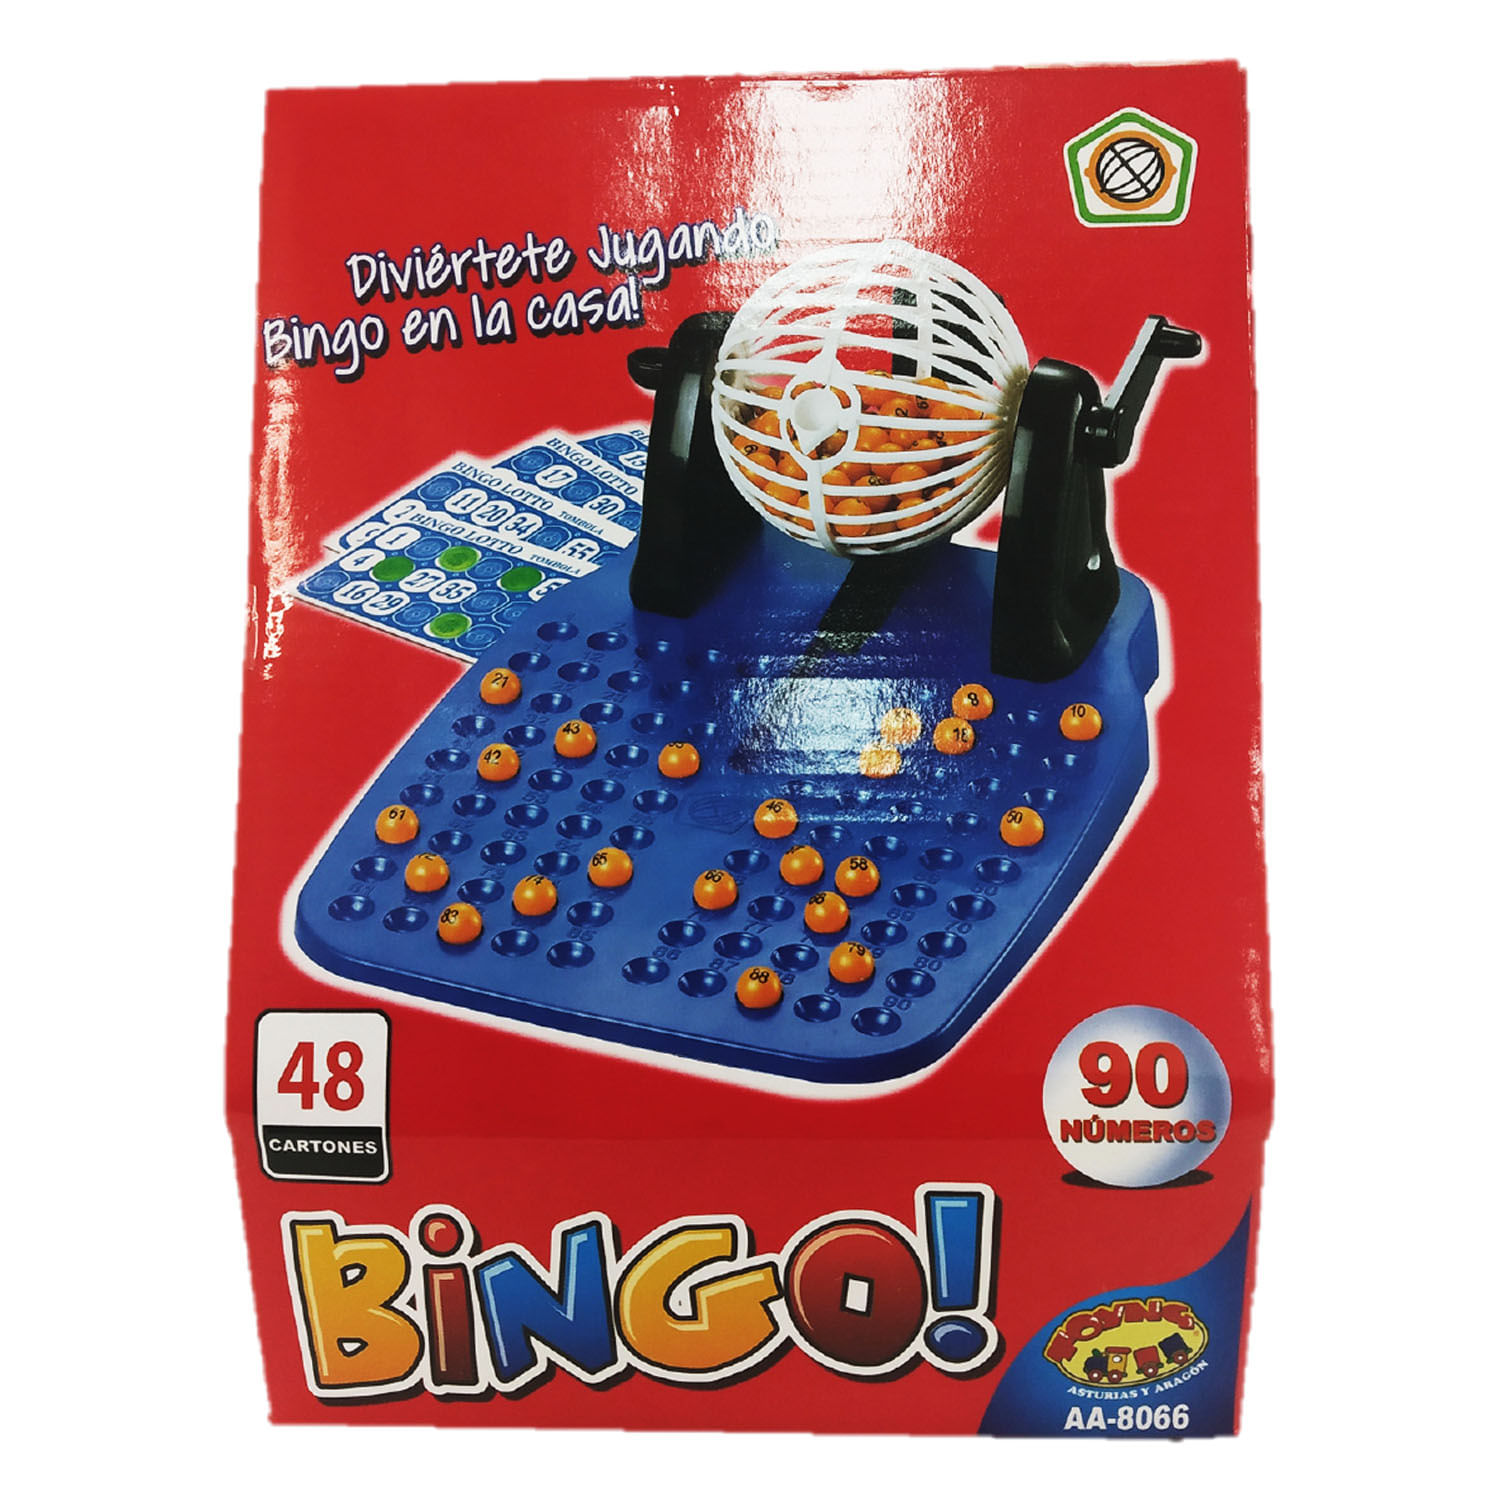 Cuanto Cuesta El Bingo Juego Bingo | Jumbo.cl